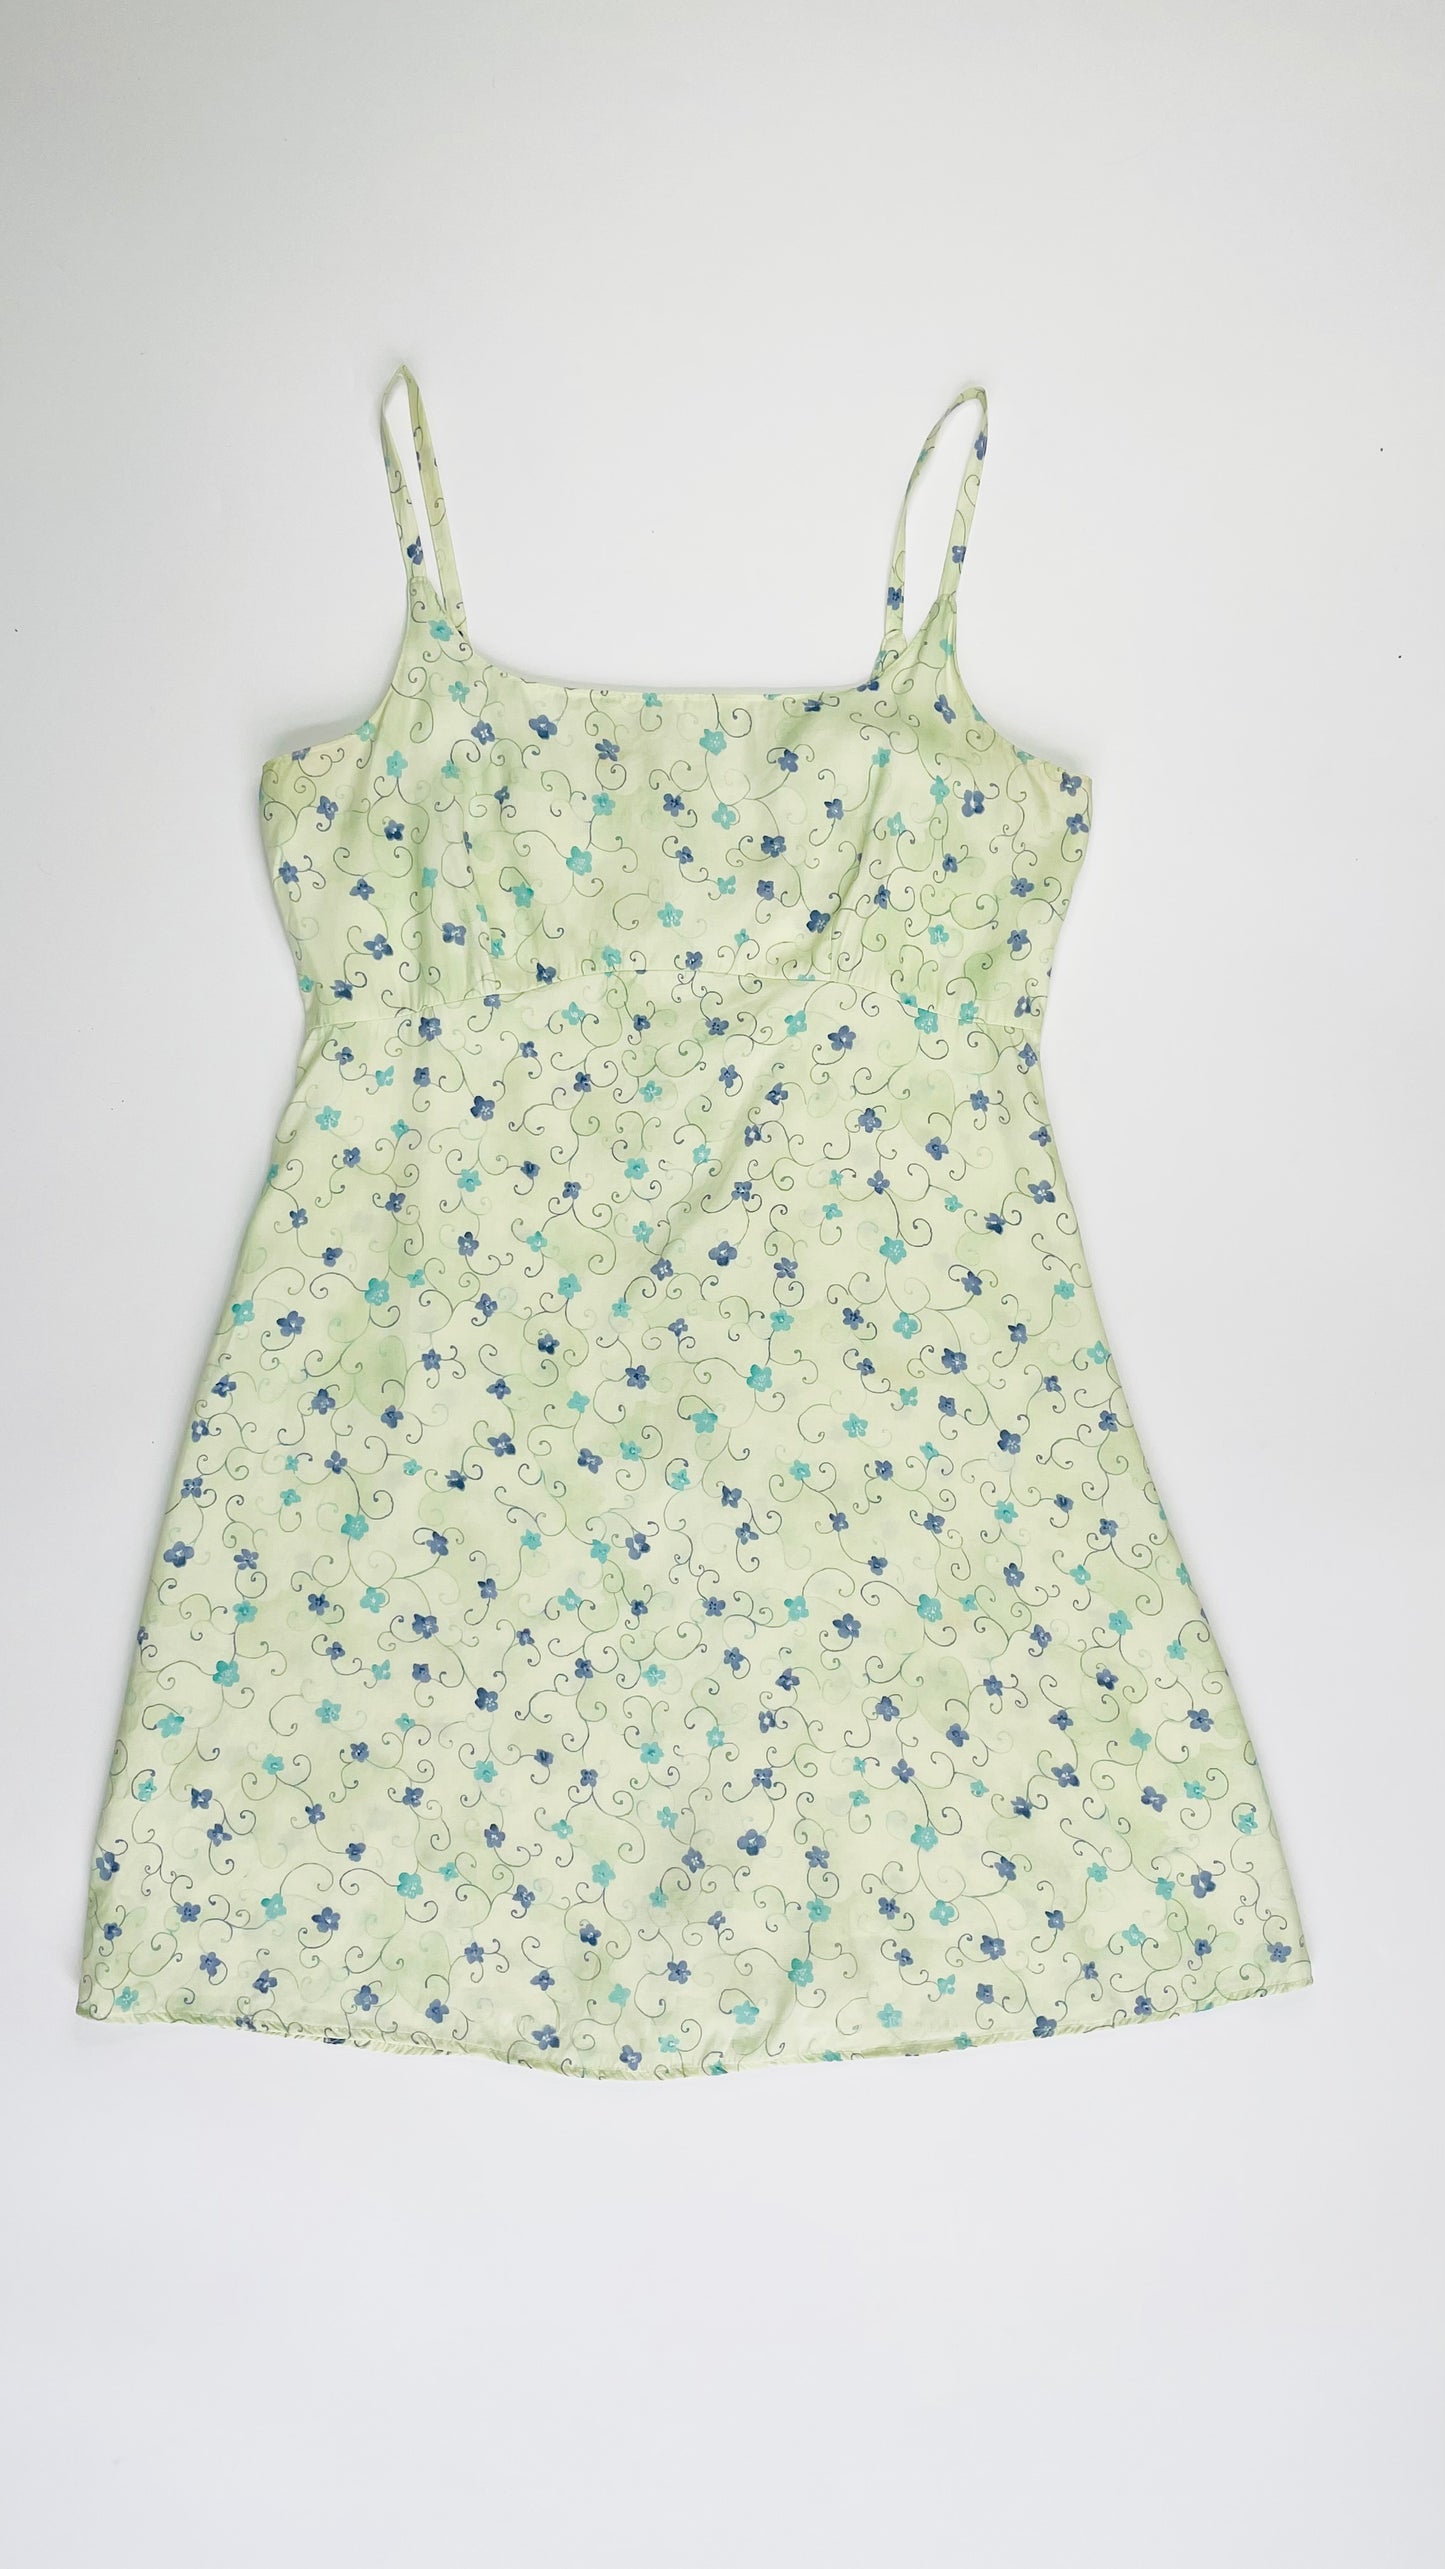 Vintage 90s pastel green & blue floral print babydoll mini tank dress - Size M